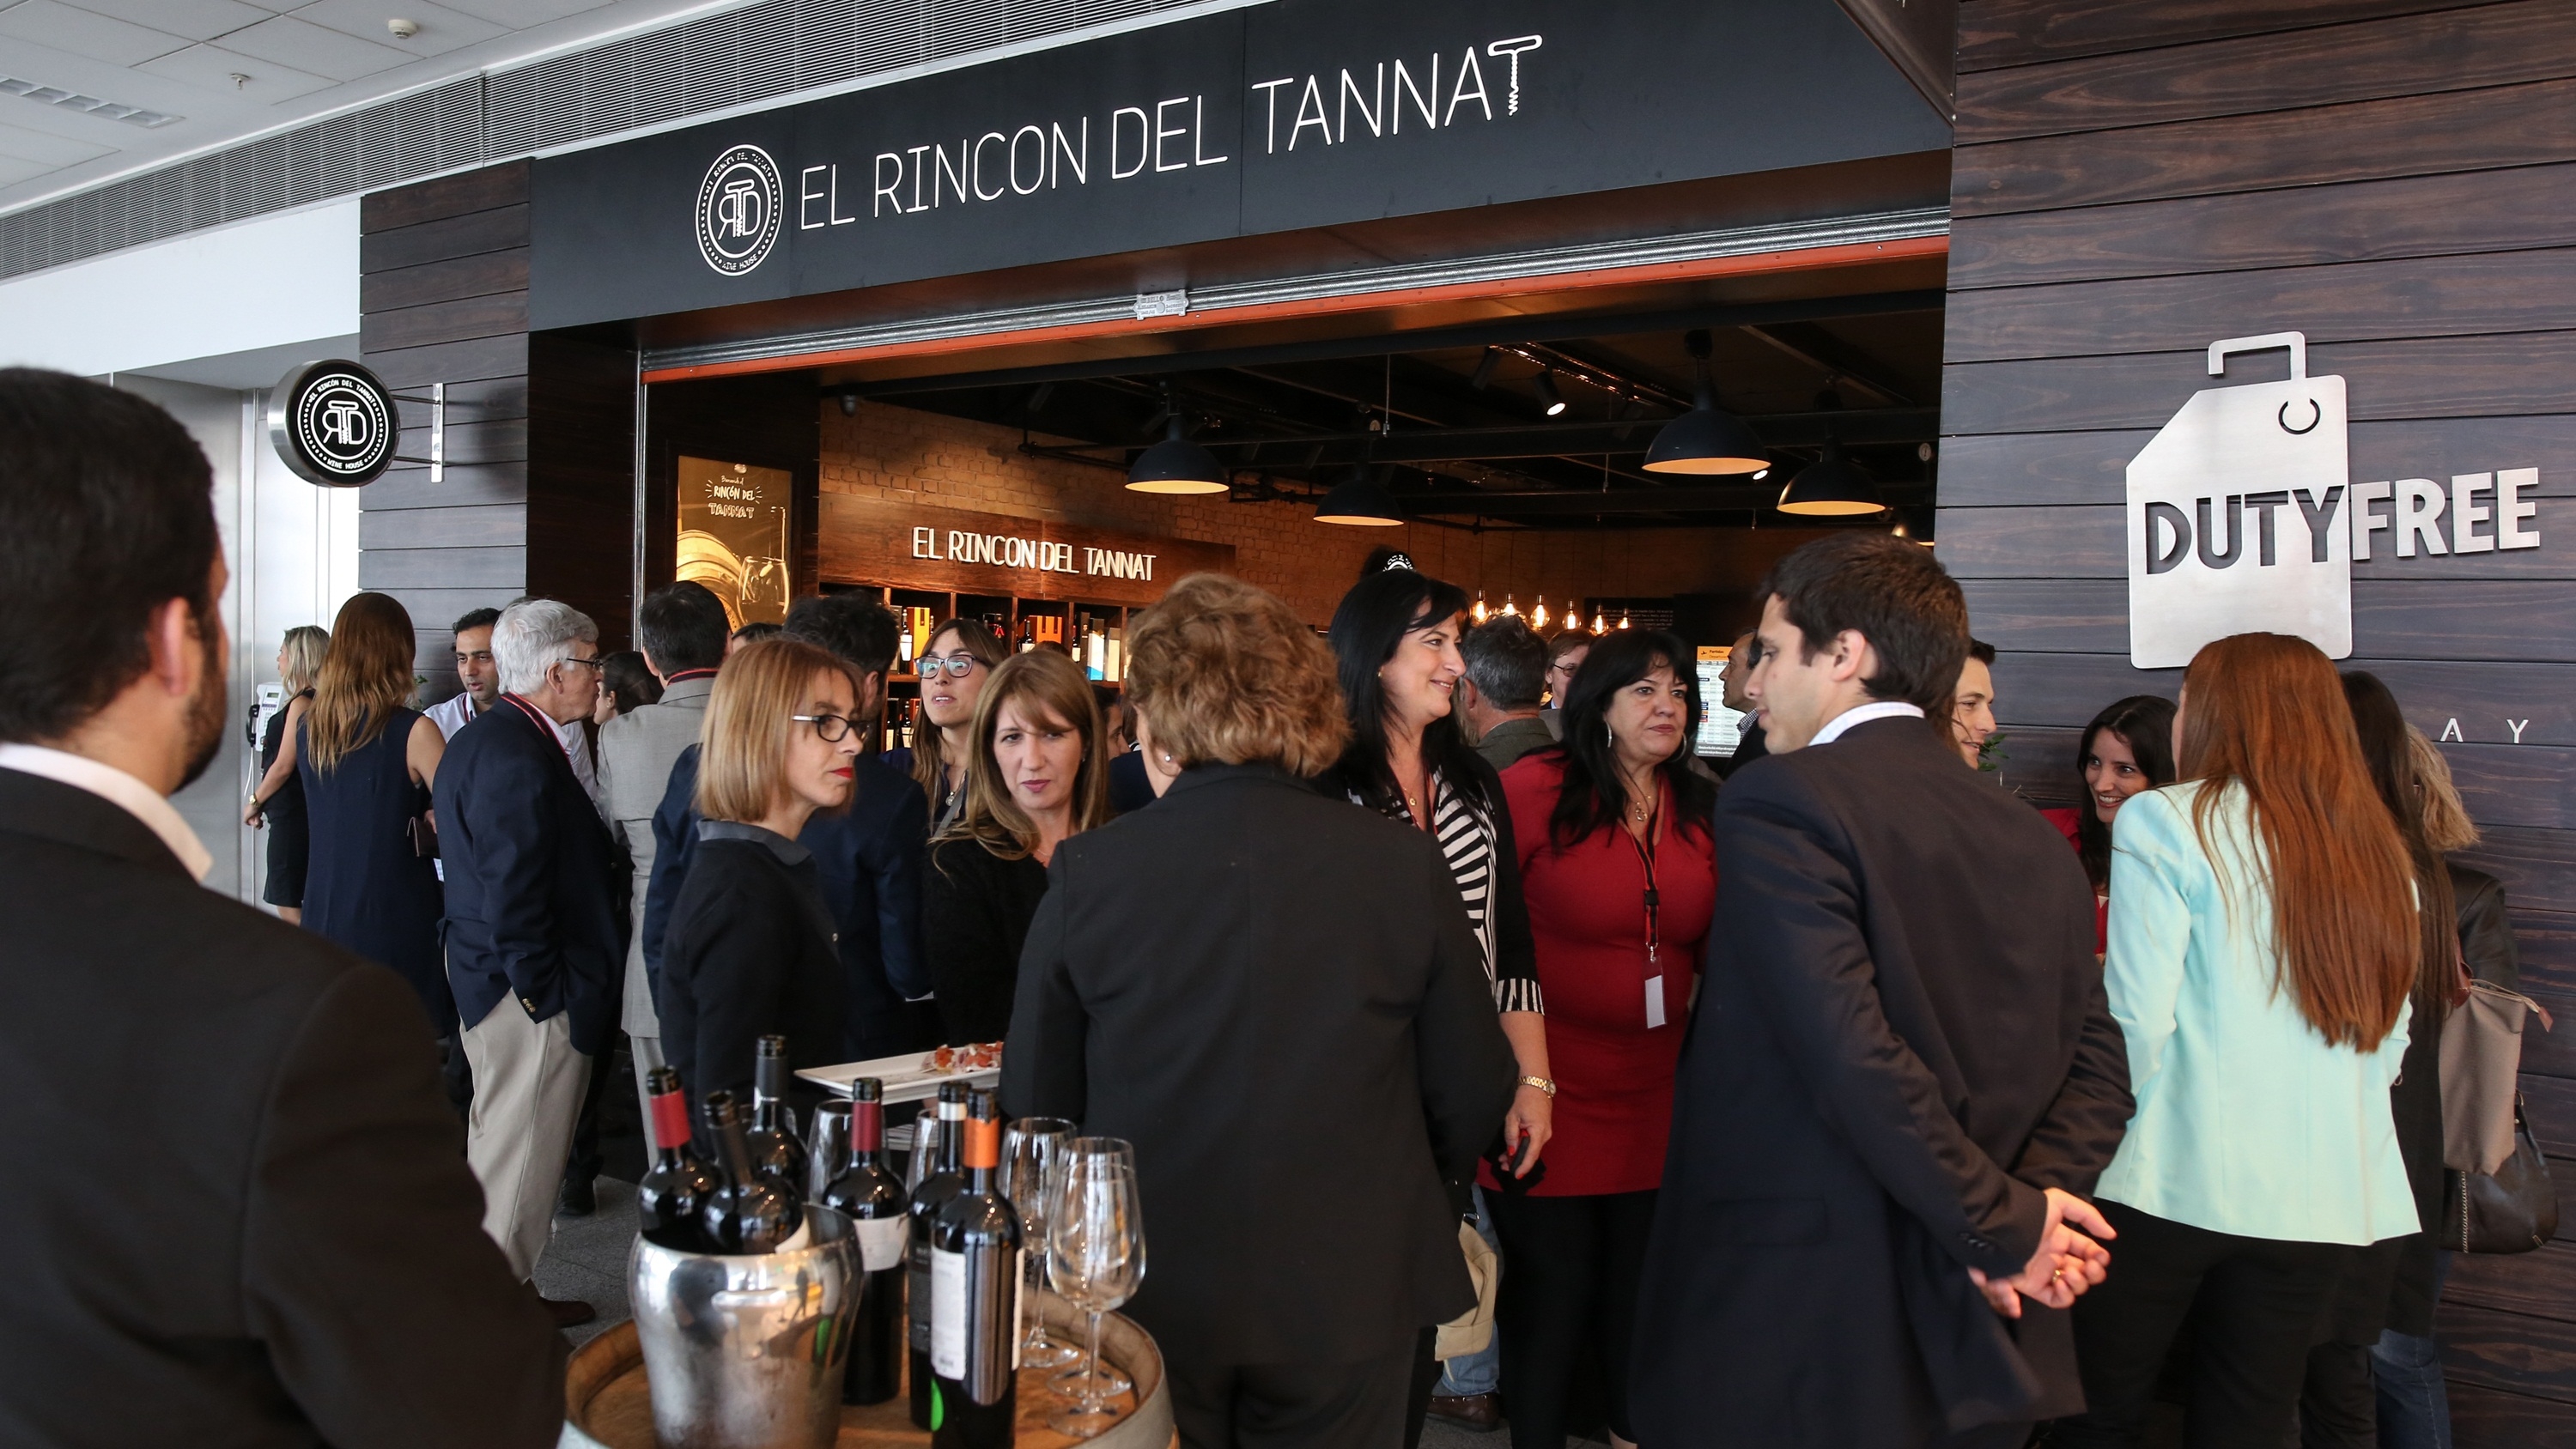  Uruguay sabe de vinos: Se inauguró El Rincón del Tannat en Aeropuerto de Carrasco